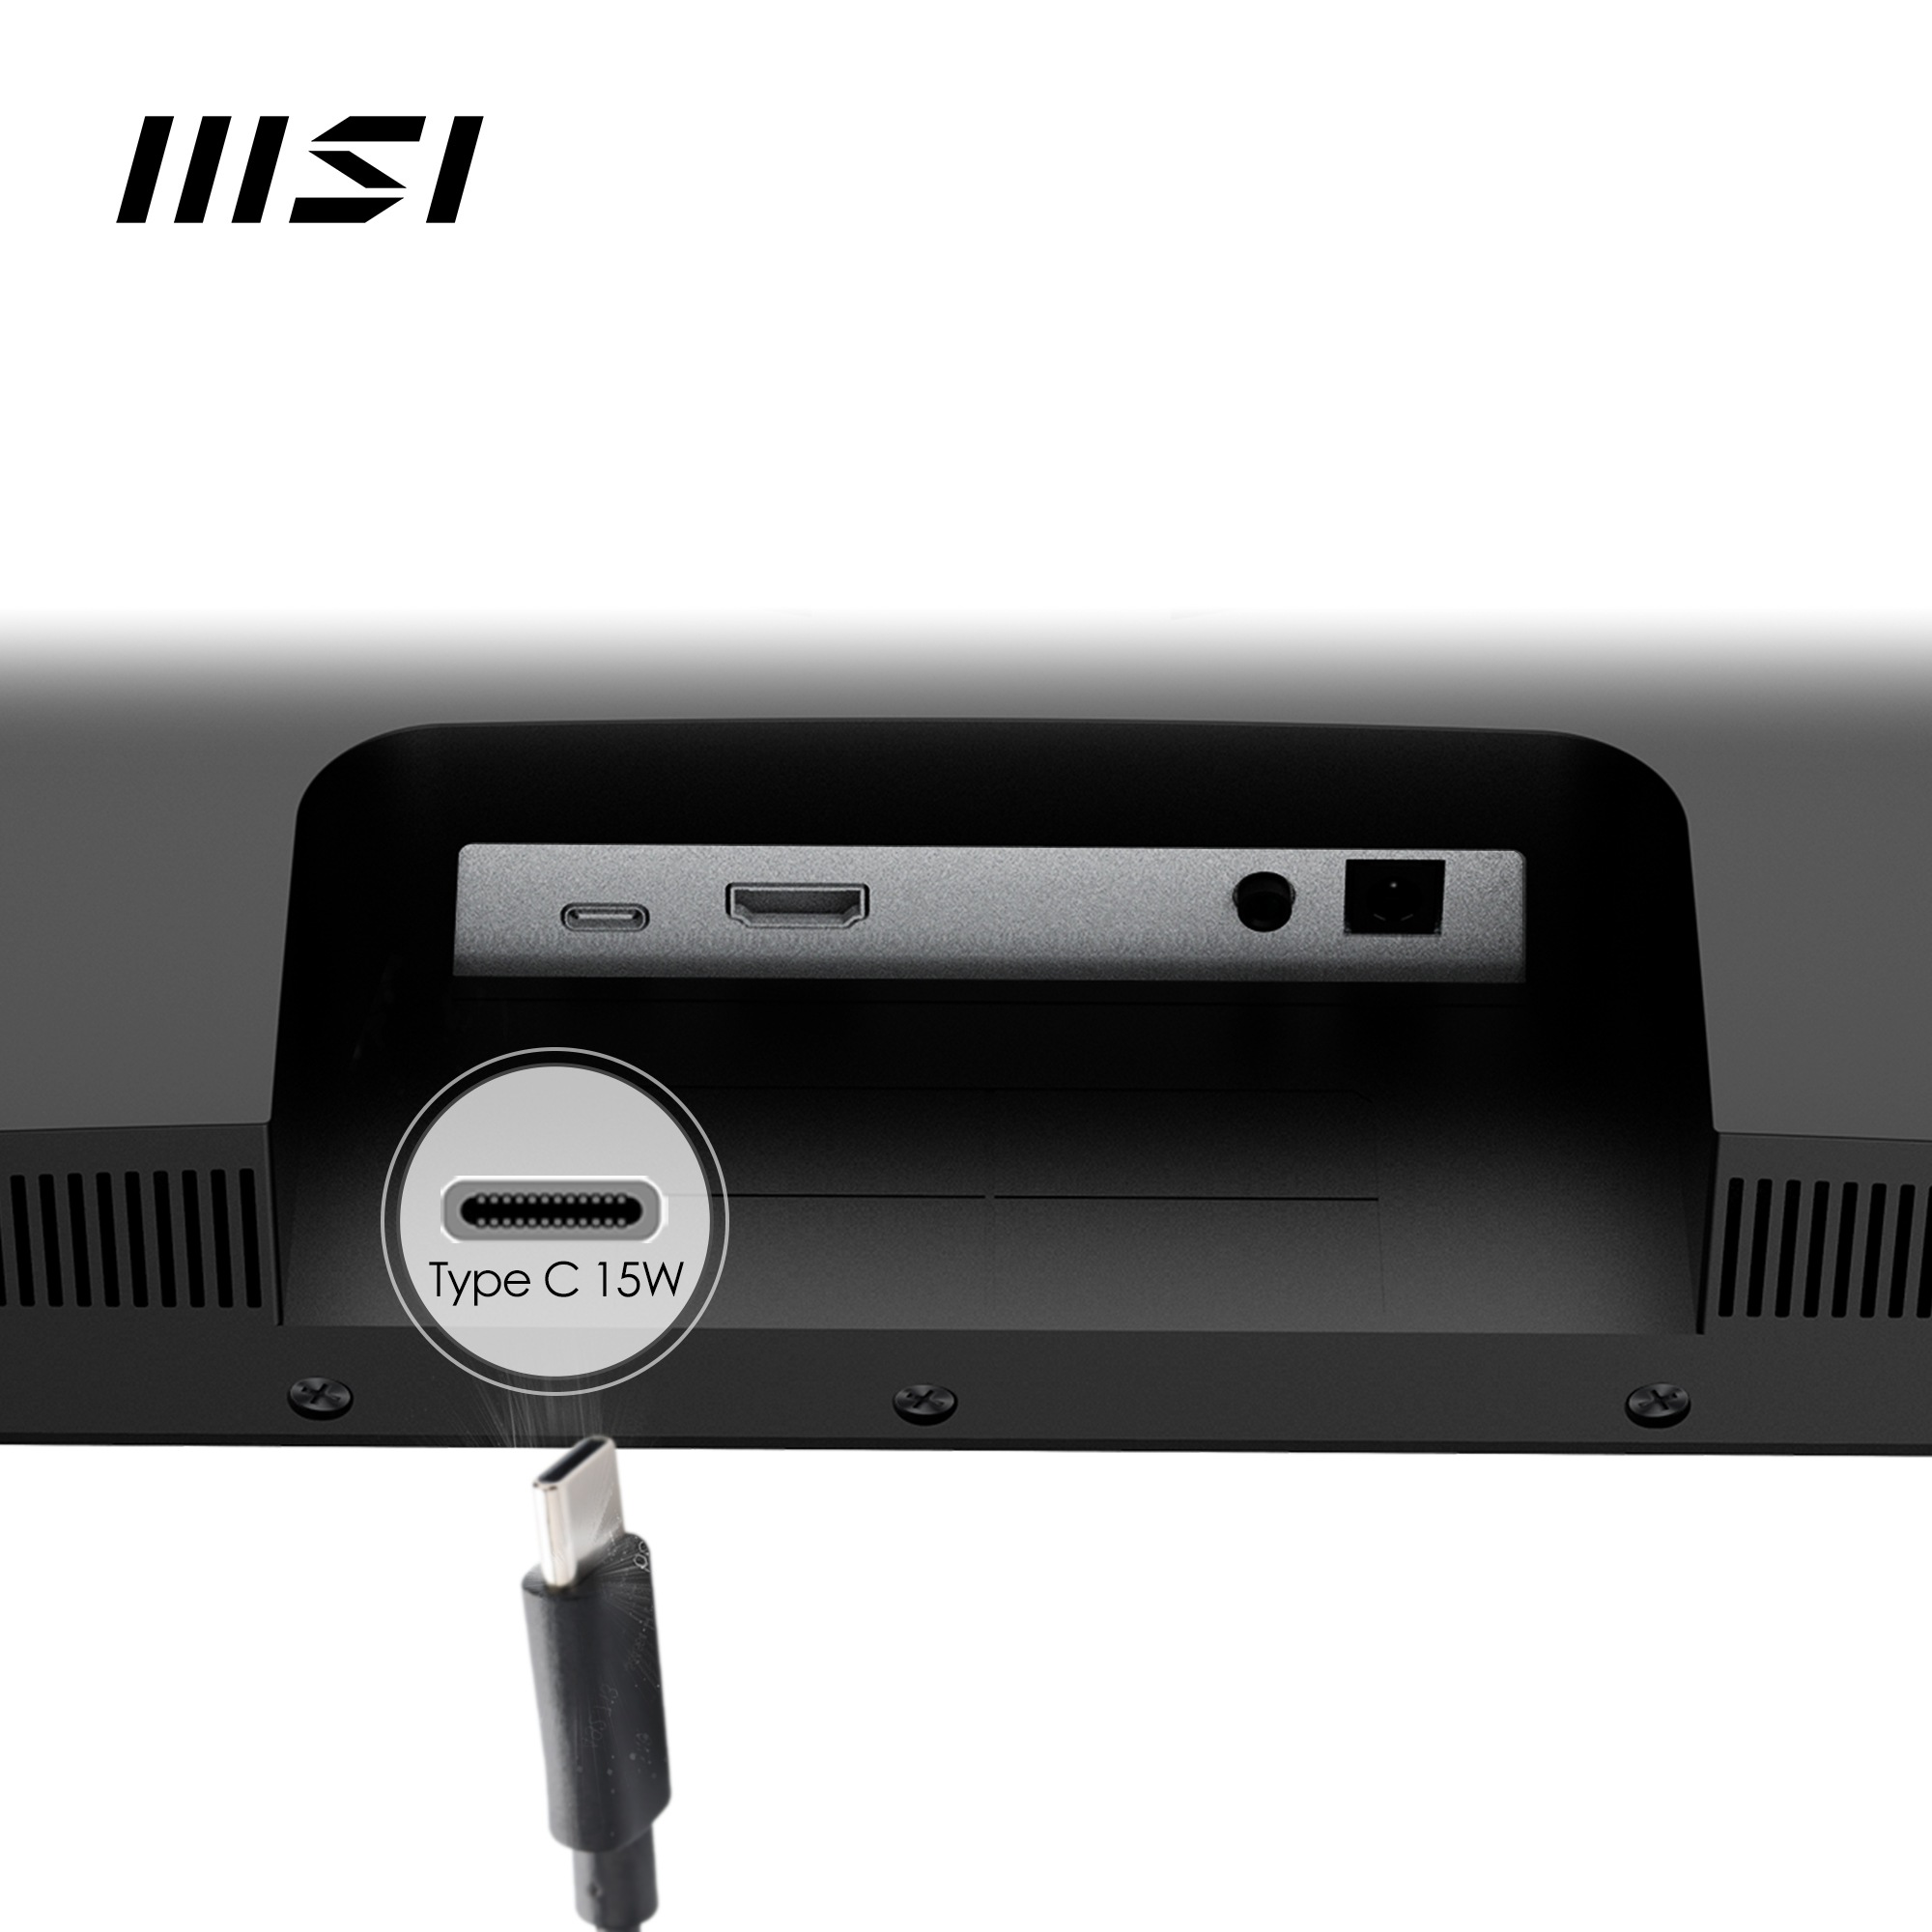 MSI LED-Monitor »Modern MD2412P«, 60 cm/24 Zoll, 1920 x 1080 px, Full HD, 1 ms Reaktionszeit, 100 Hz, höhenverstellbar, 3 Jahre Herstellergarantie, USB-C